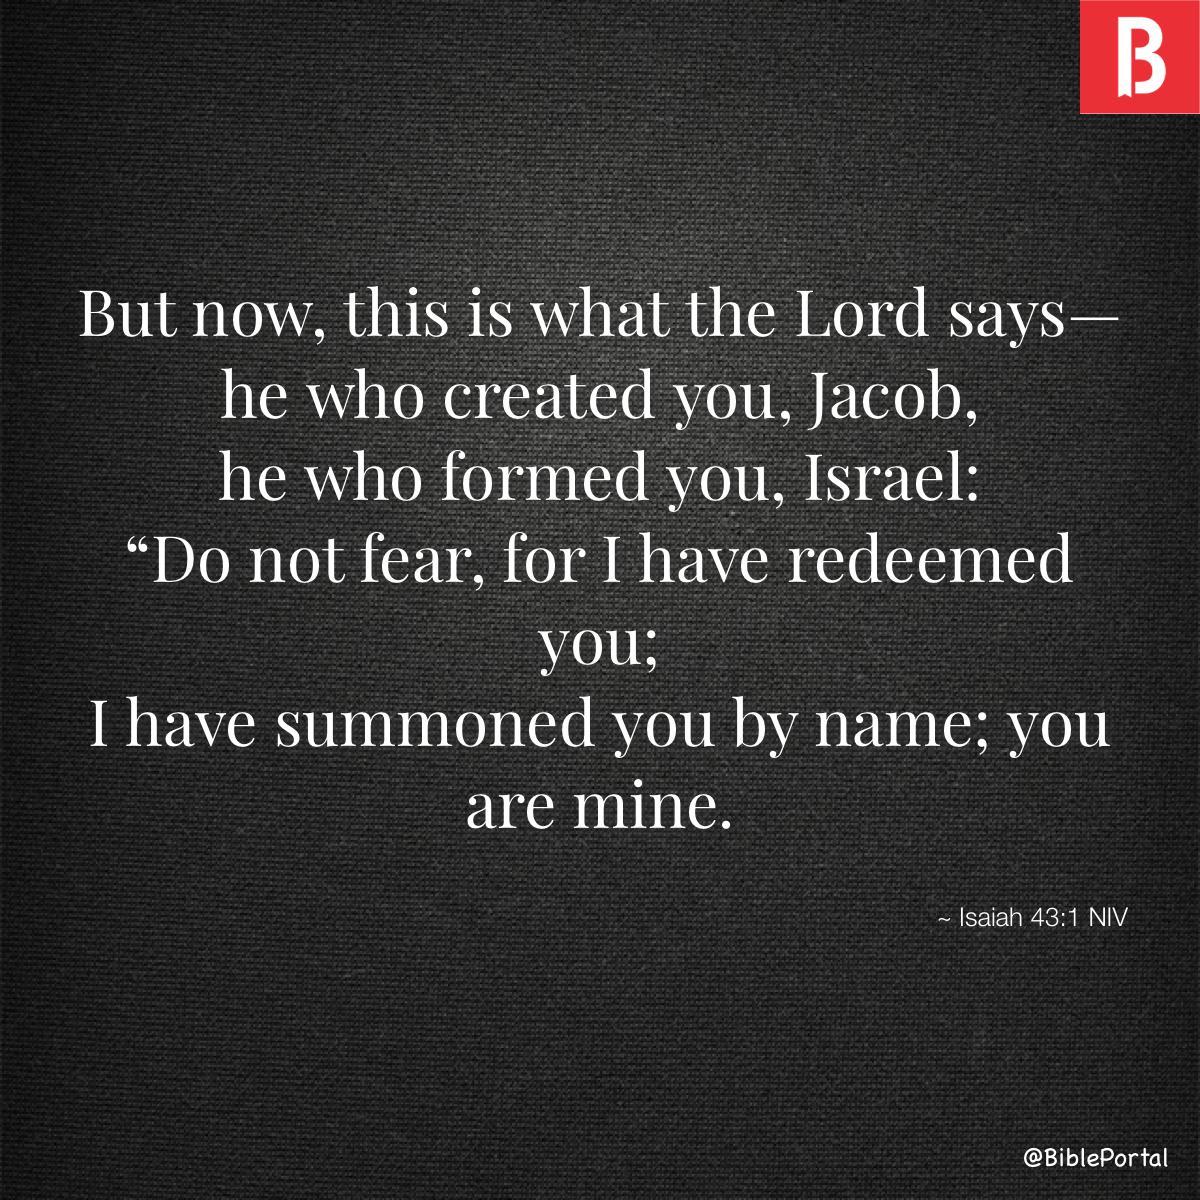 Isaiah 43:1 NIV